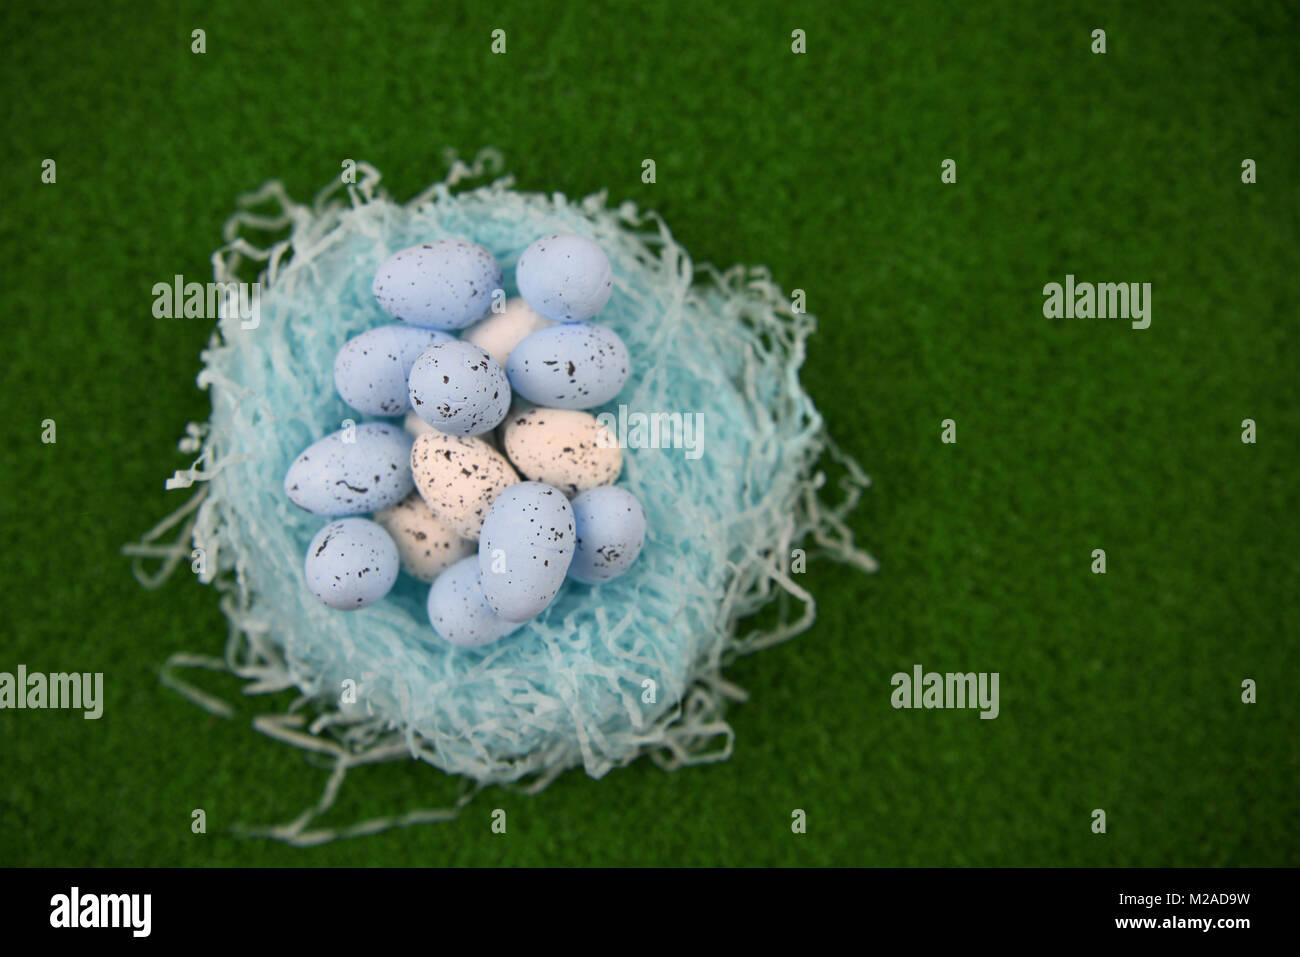 Ostern mit einem Nest voller Blau Weiß speckle Ostern Eier auf grünem Gras Frühling Hintergrund Stockfoto